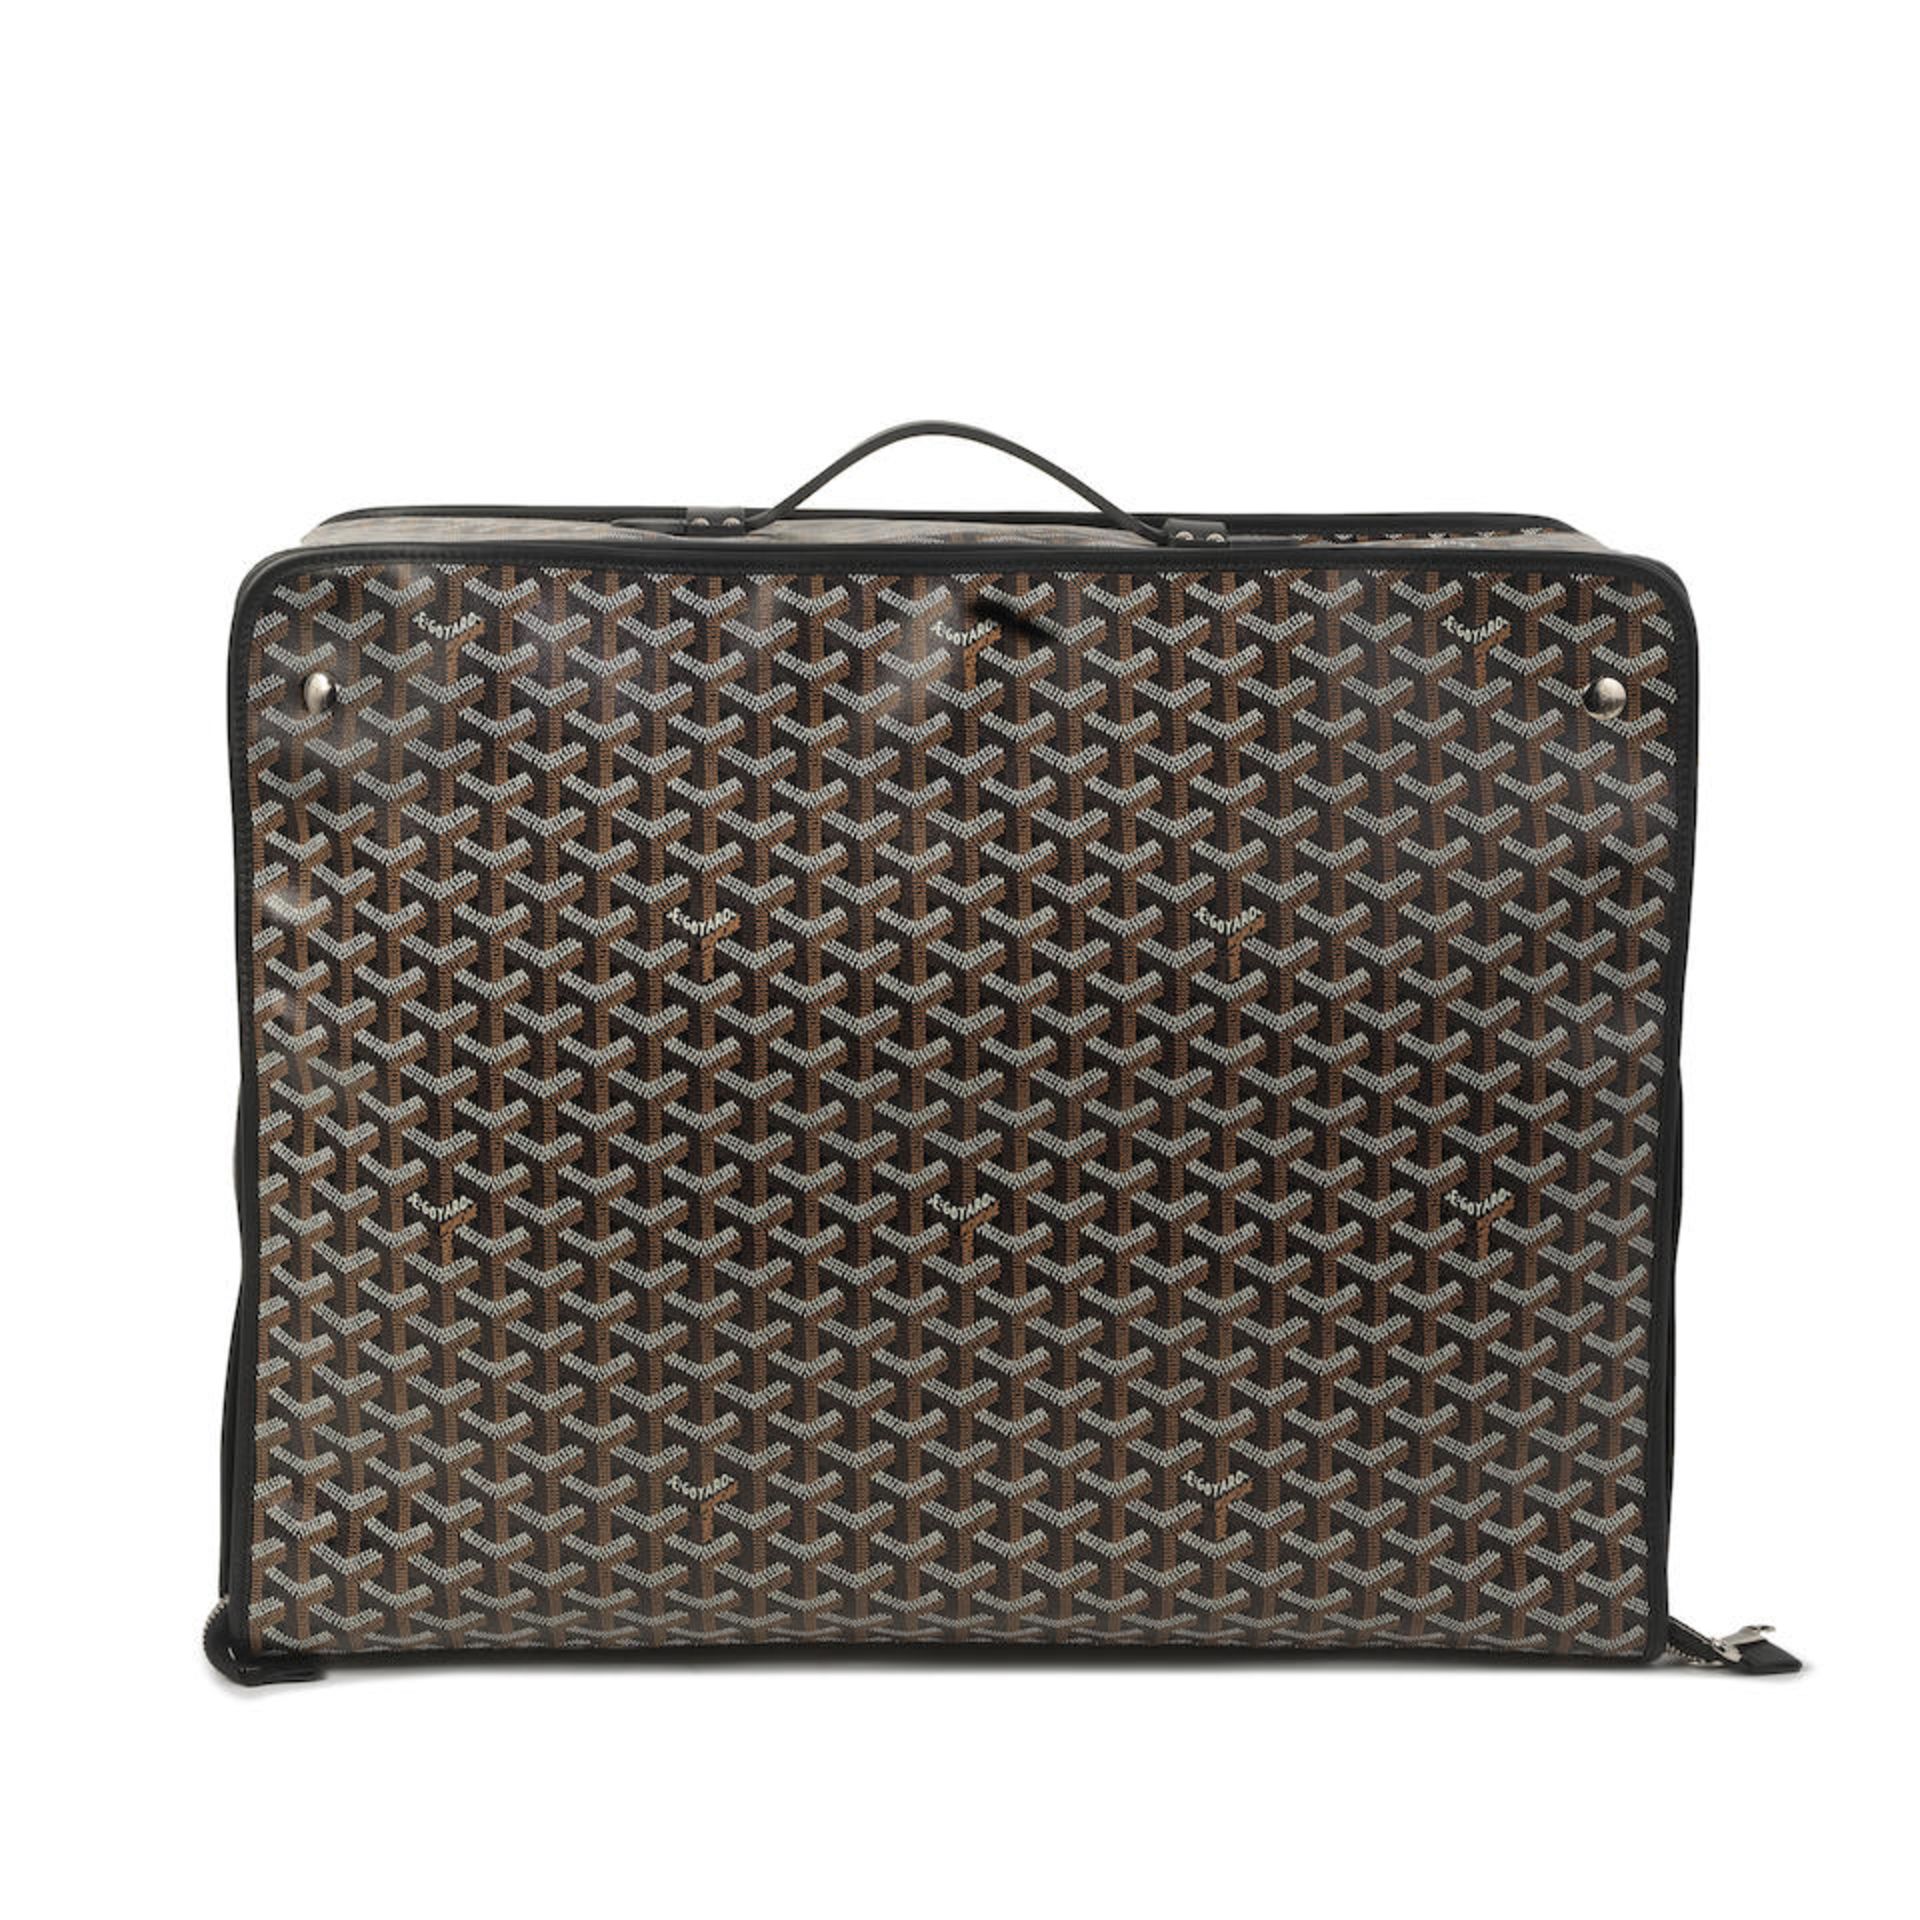 Goyard: a Goyardine Caravelle Folding Suitcase 50 (includes dust bag)